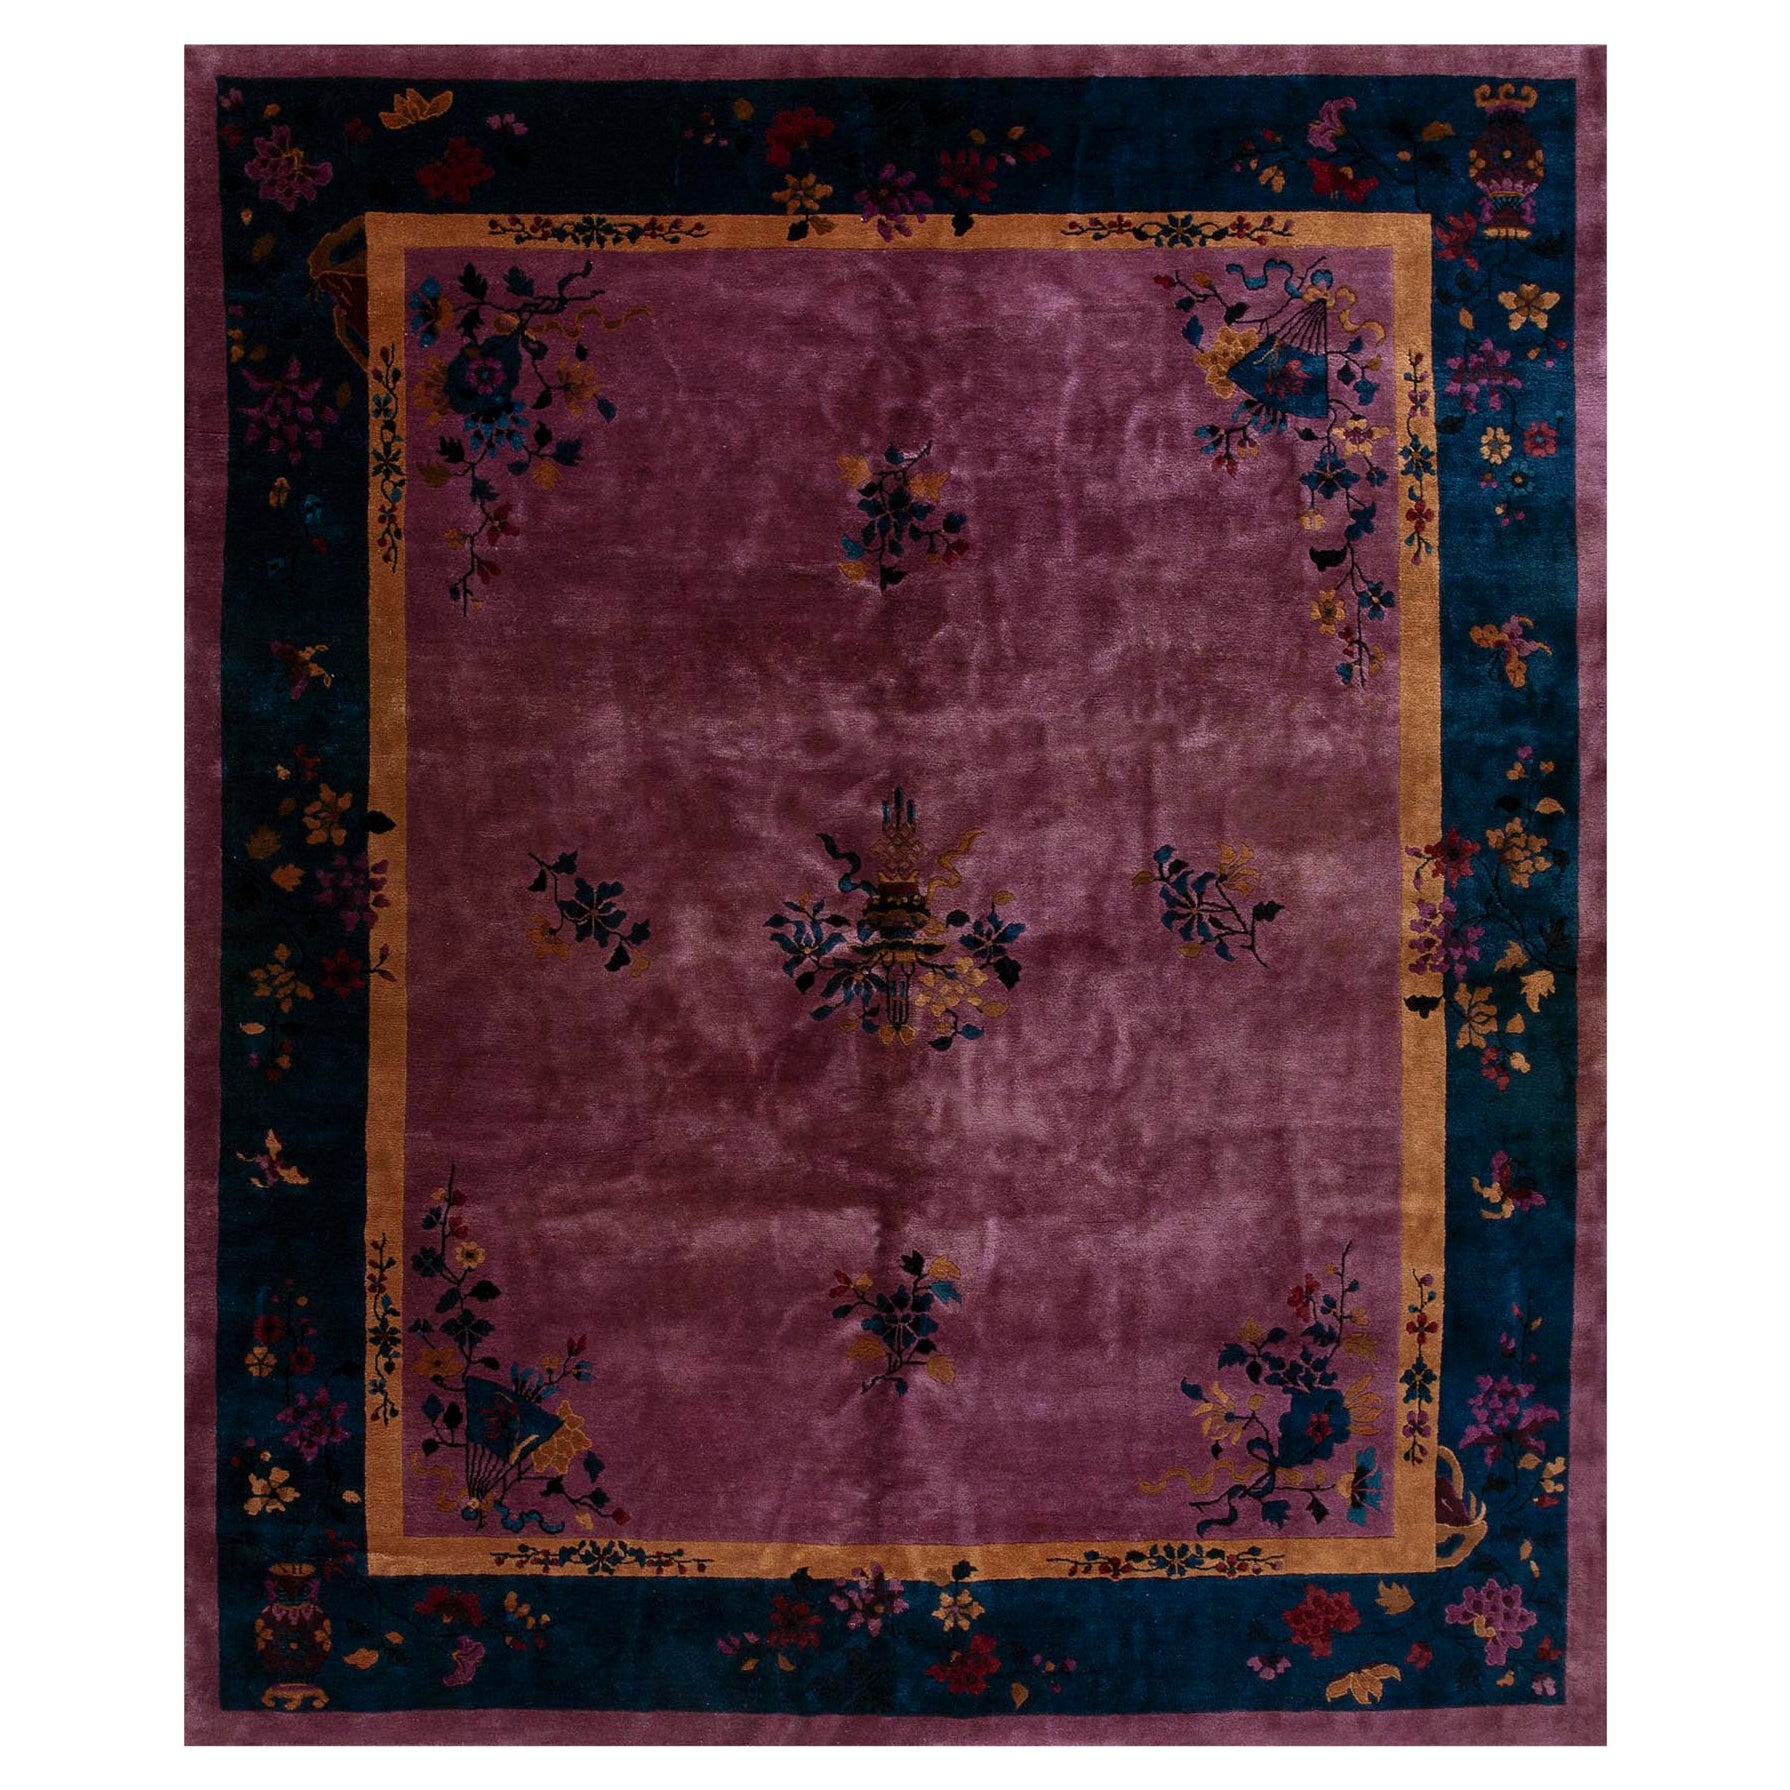 Chinesischer Art-déco-Teppich aus den 1920er Jahren ( 8' x 9' 8'' – 245 x 295 cm)